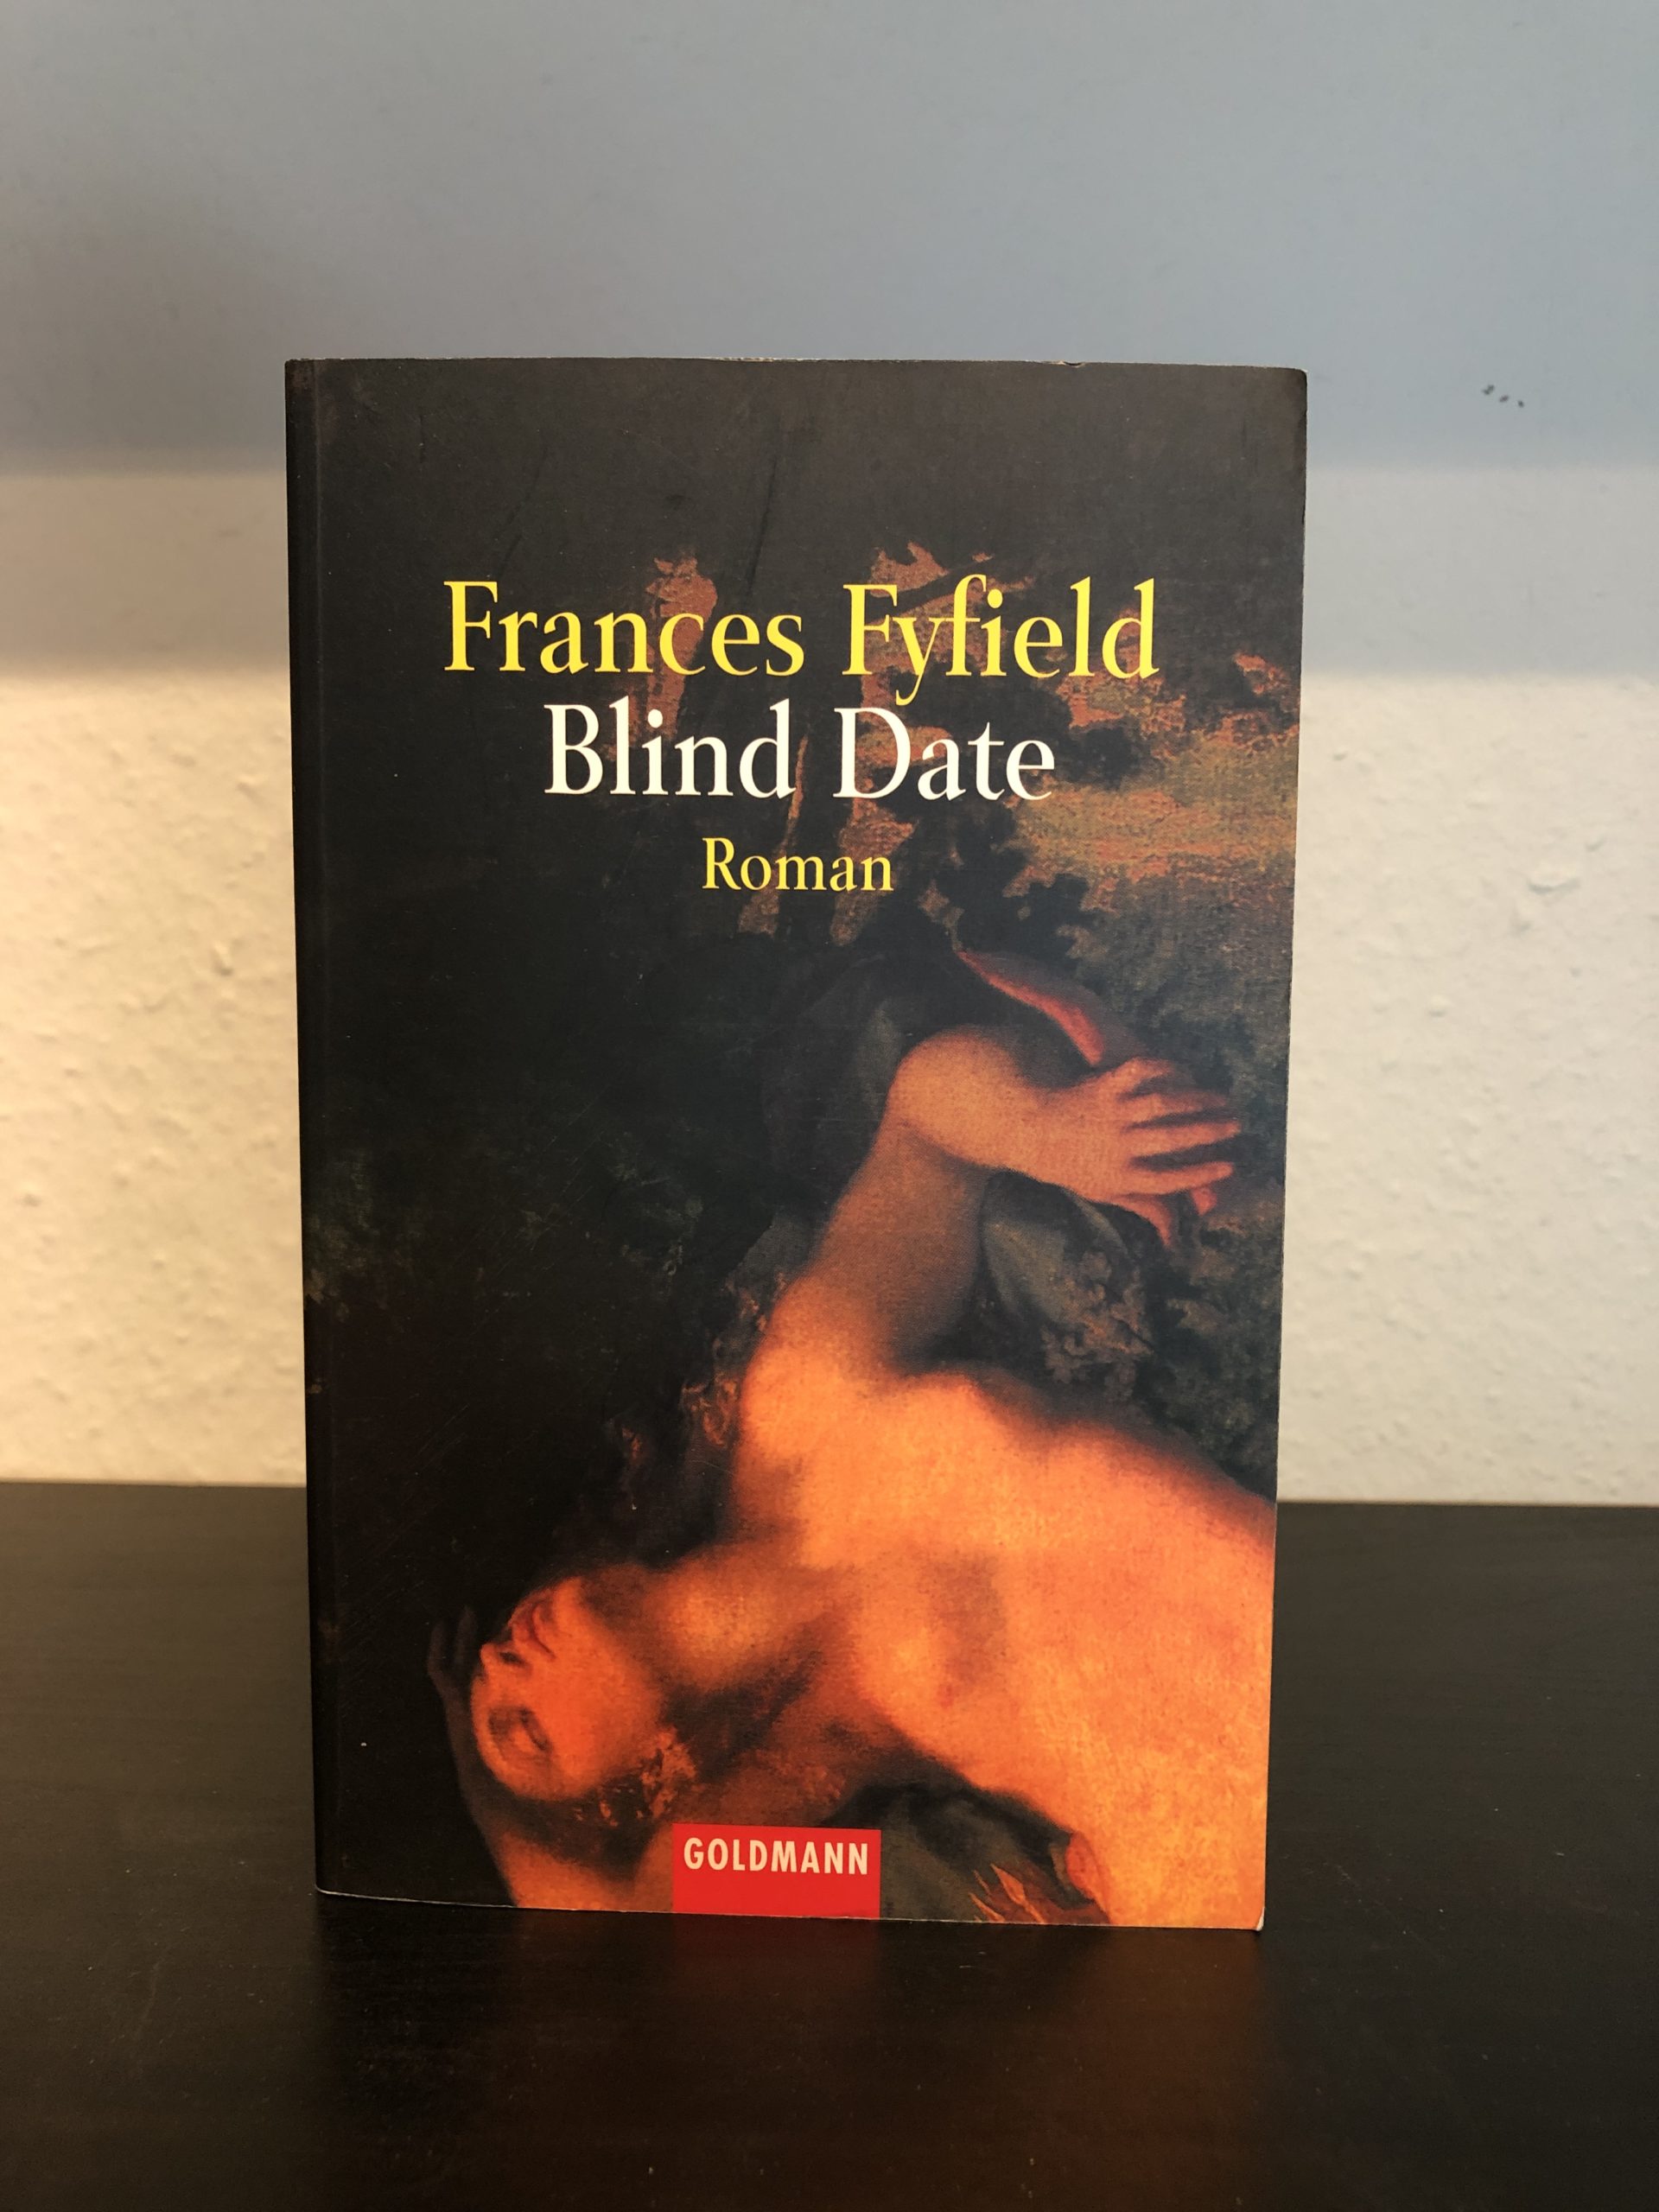 Blind Date - Frances Fyfield